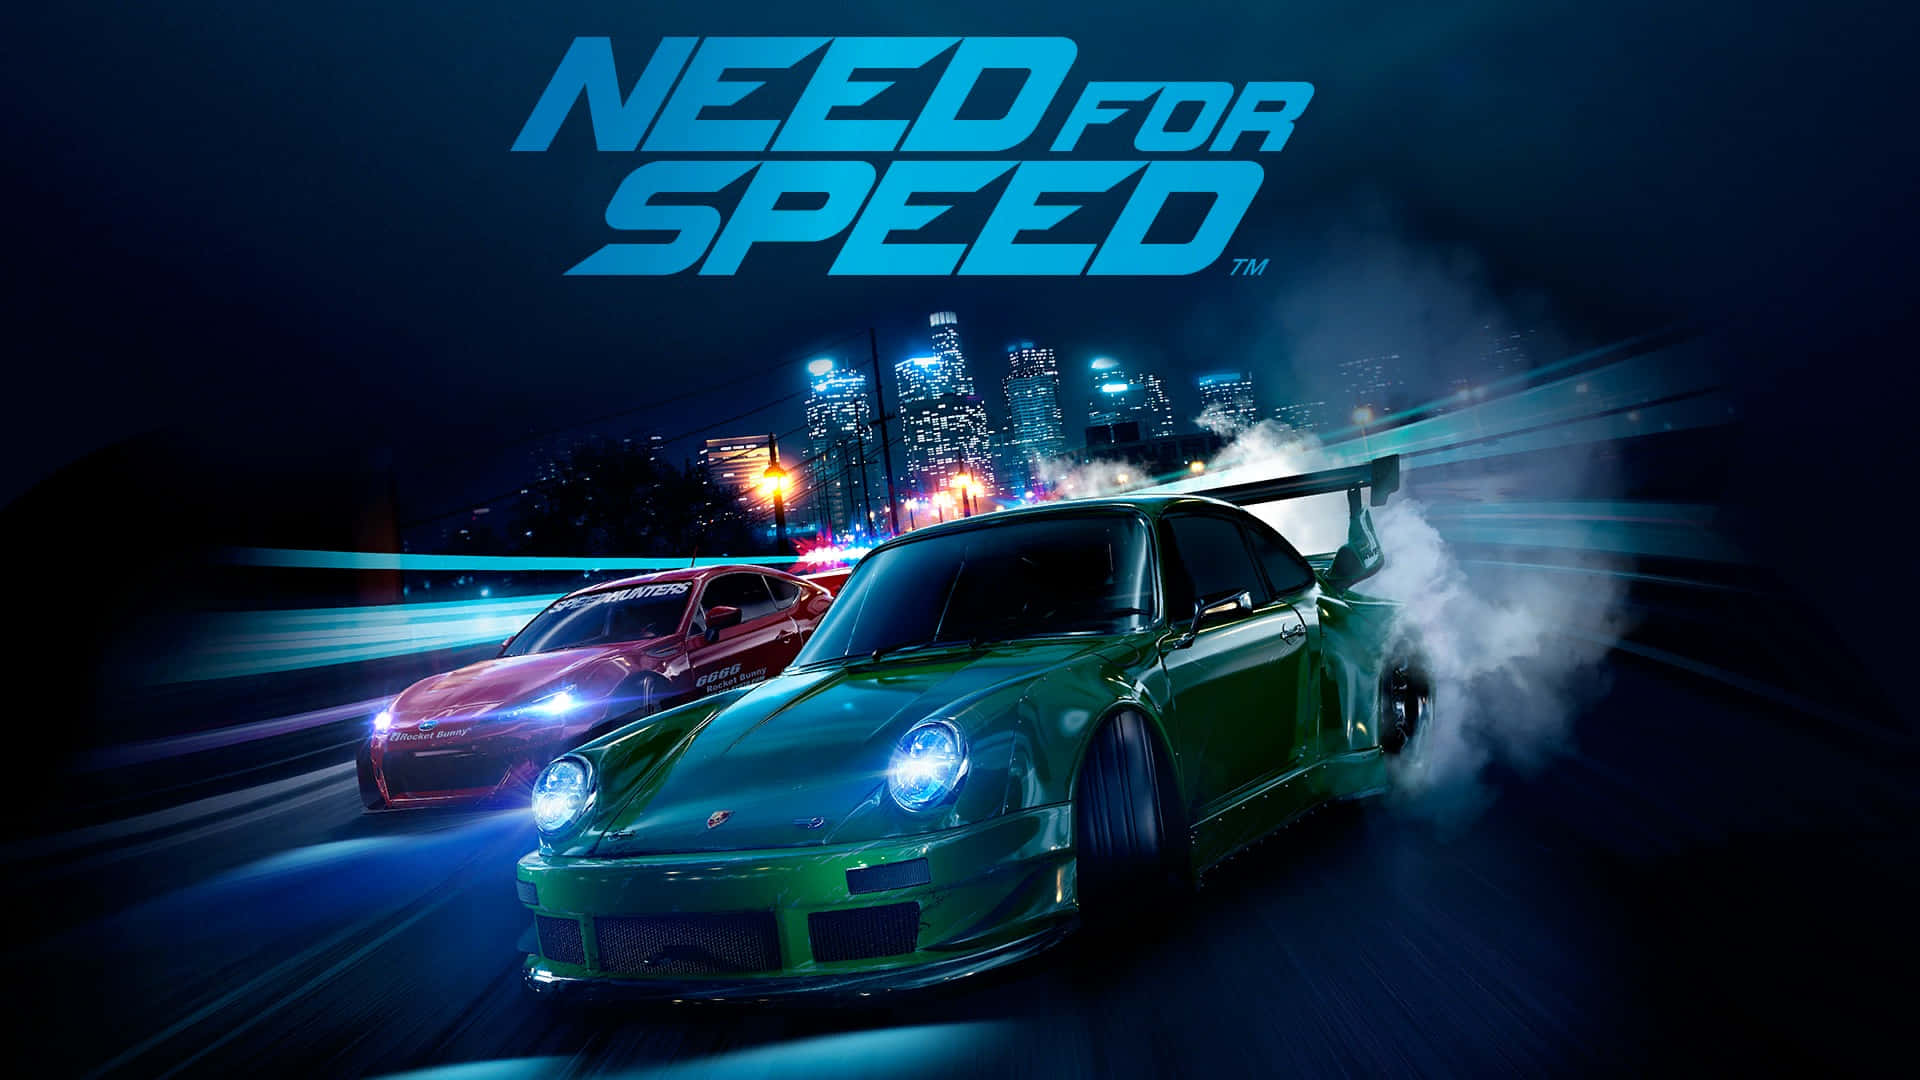 Fondode Pantalla Con El Logo Del Juego Need For Speed.